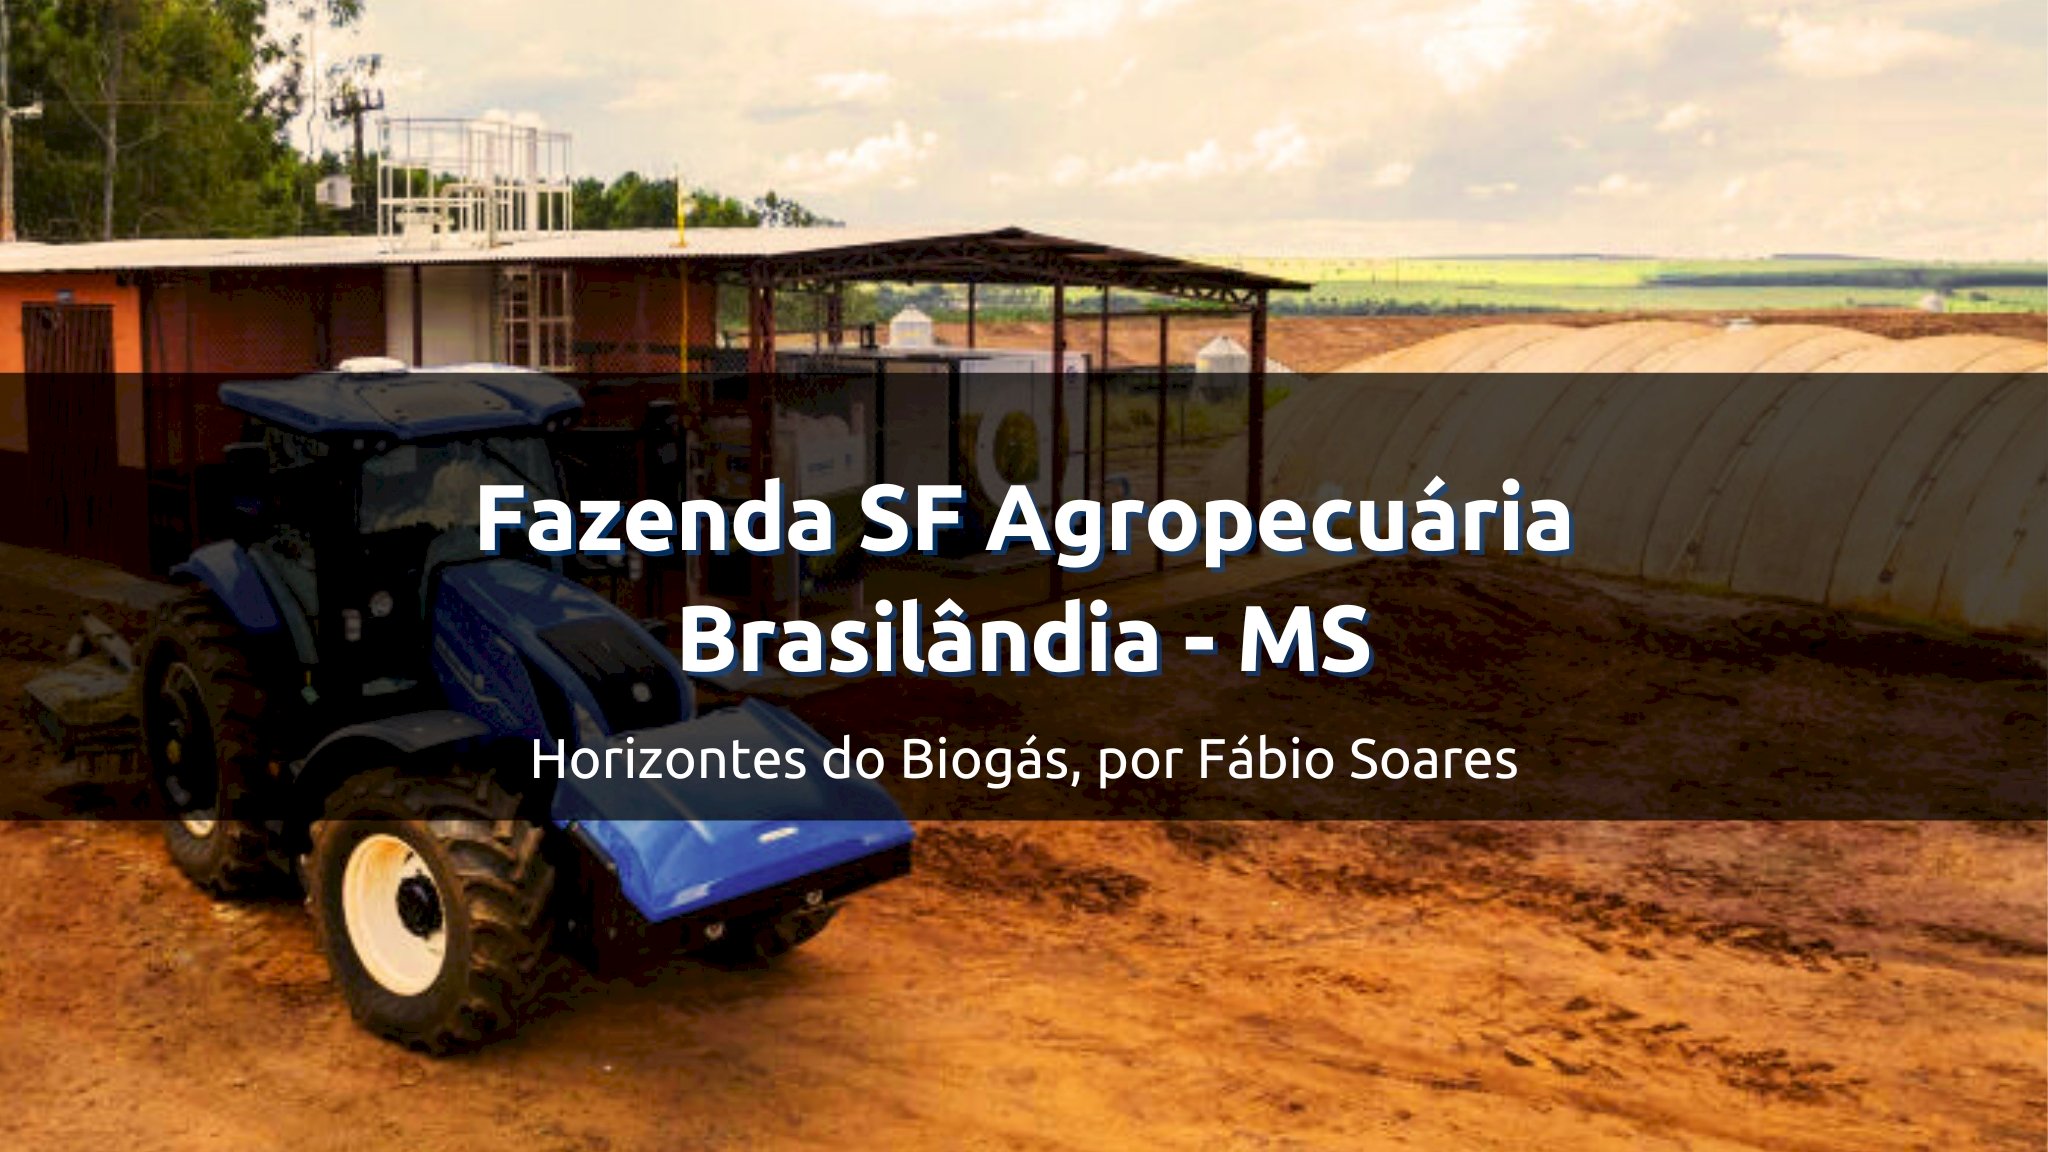 Fazenda SF Agropecuária, Brasilândia / Mato Grosso do Sul